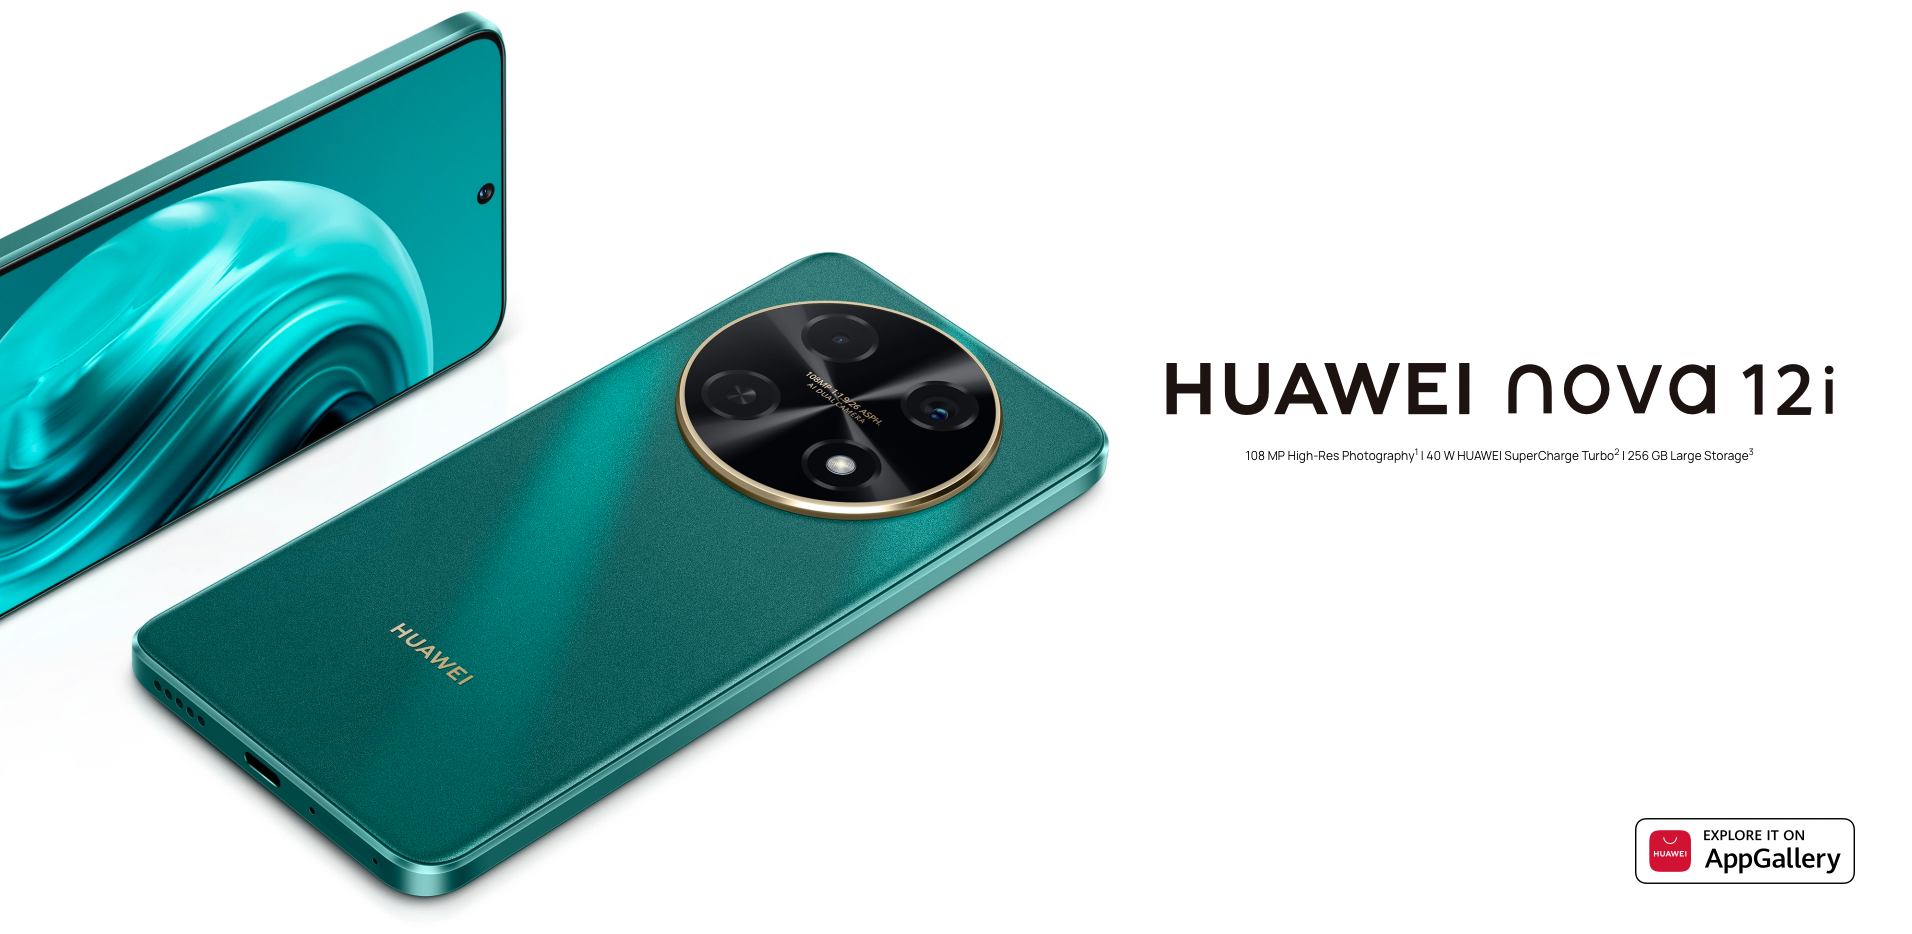 Huawei Nova 12i: wyświetlacz OLED 90 Hz, układ Snapdragon 680, aparat 108 MP i bateria 5000 mAh z ładowaniem 40 W